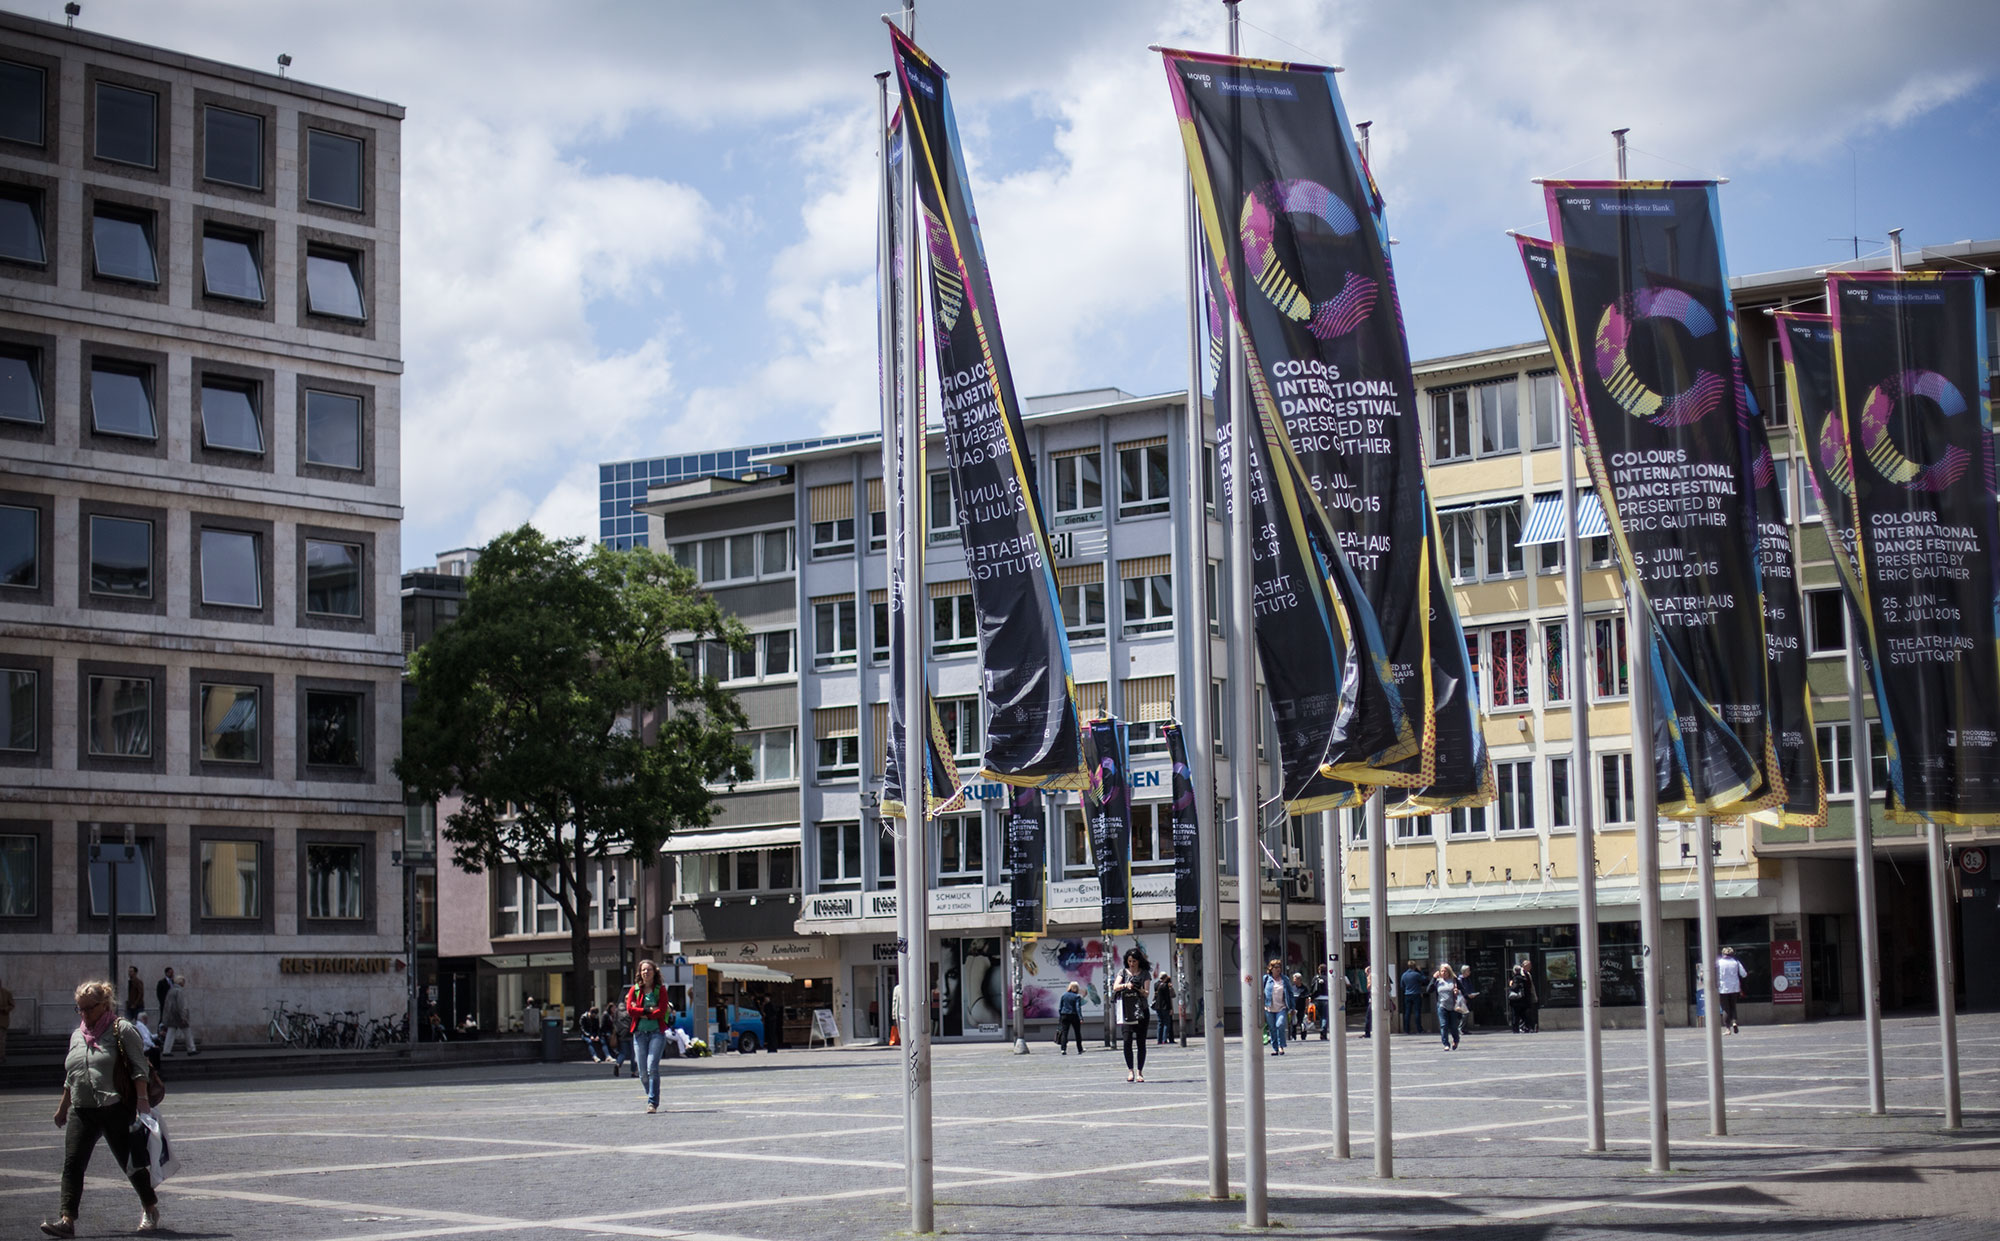 75a aus Stuttgart entwickelt die Außenwerbung des Colours International Dance Festival 2015 presented by Eric Gauthier